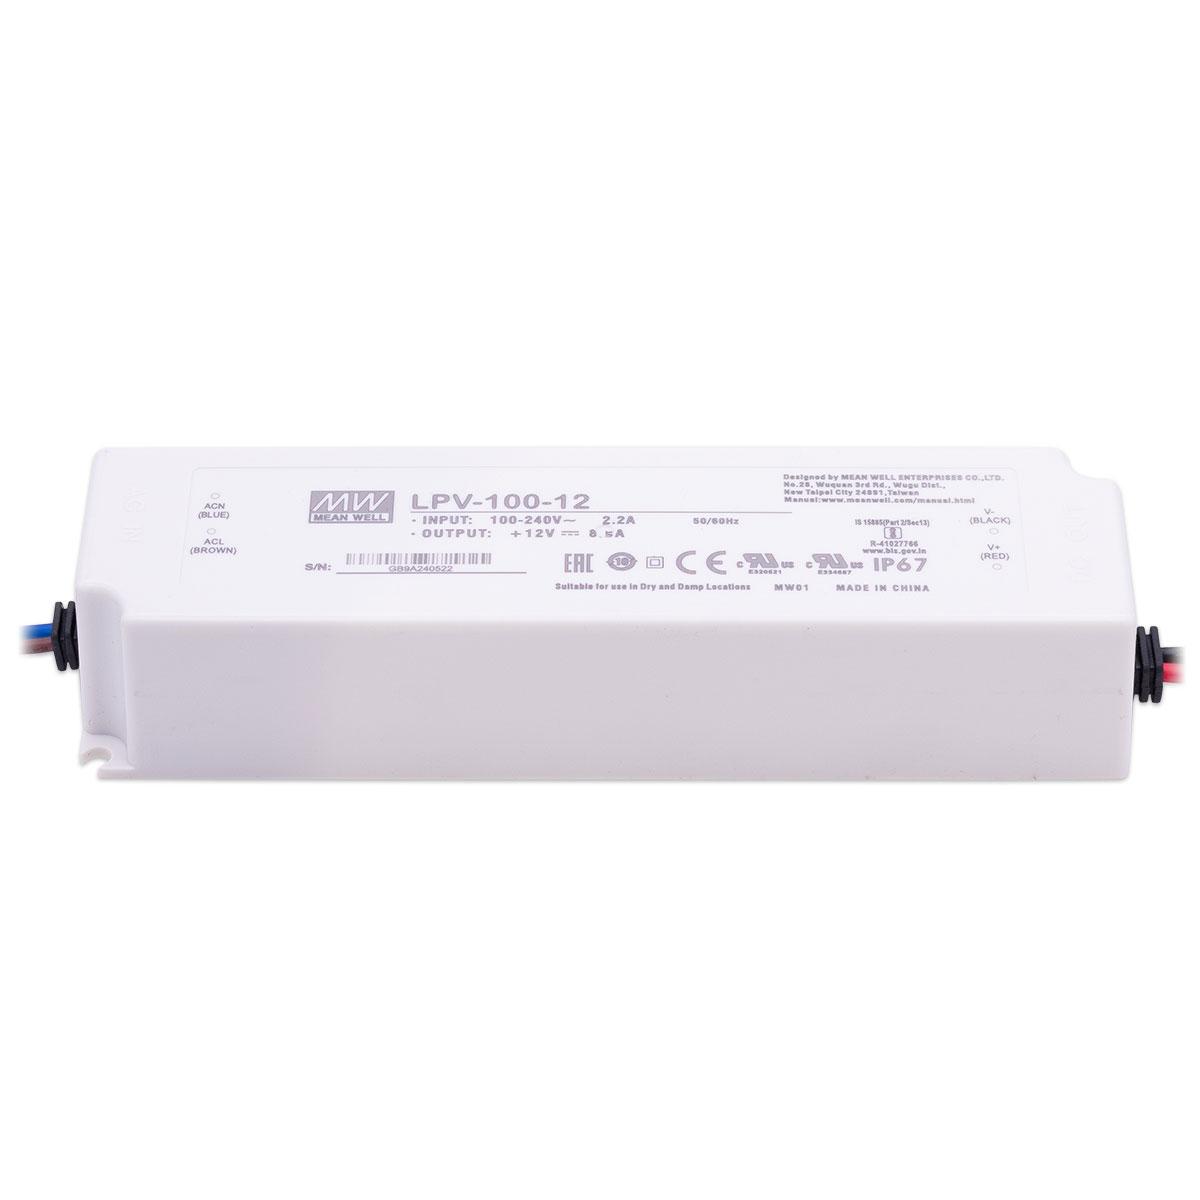 Mean Well LPV-100-12 LED Netzteil 102W 12V 8.5A IP67 Schaltnetzteil CV